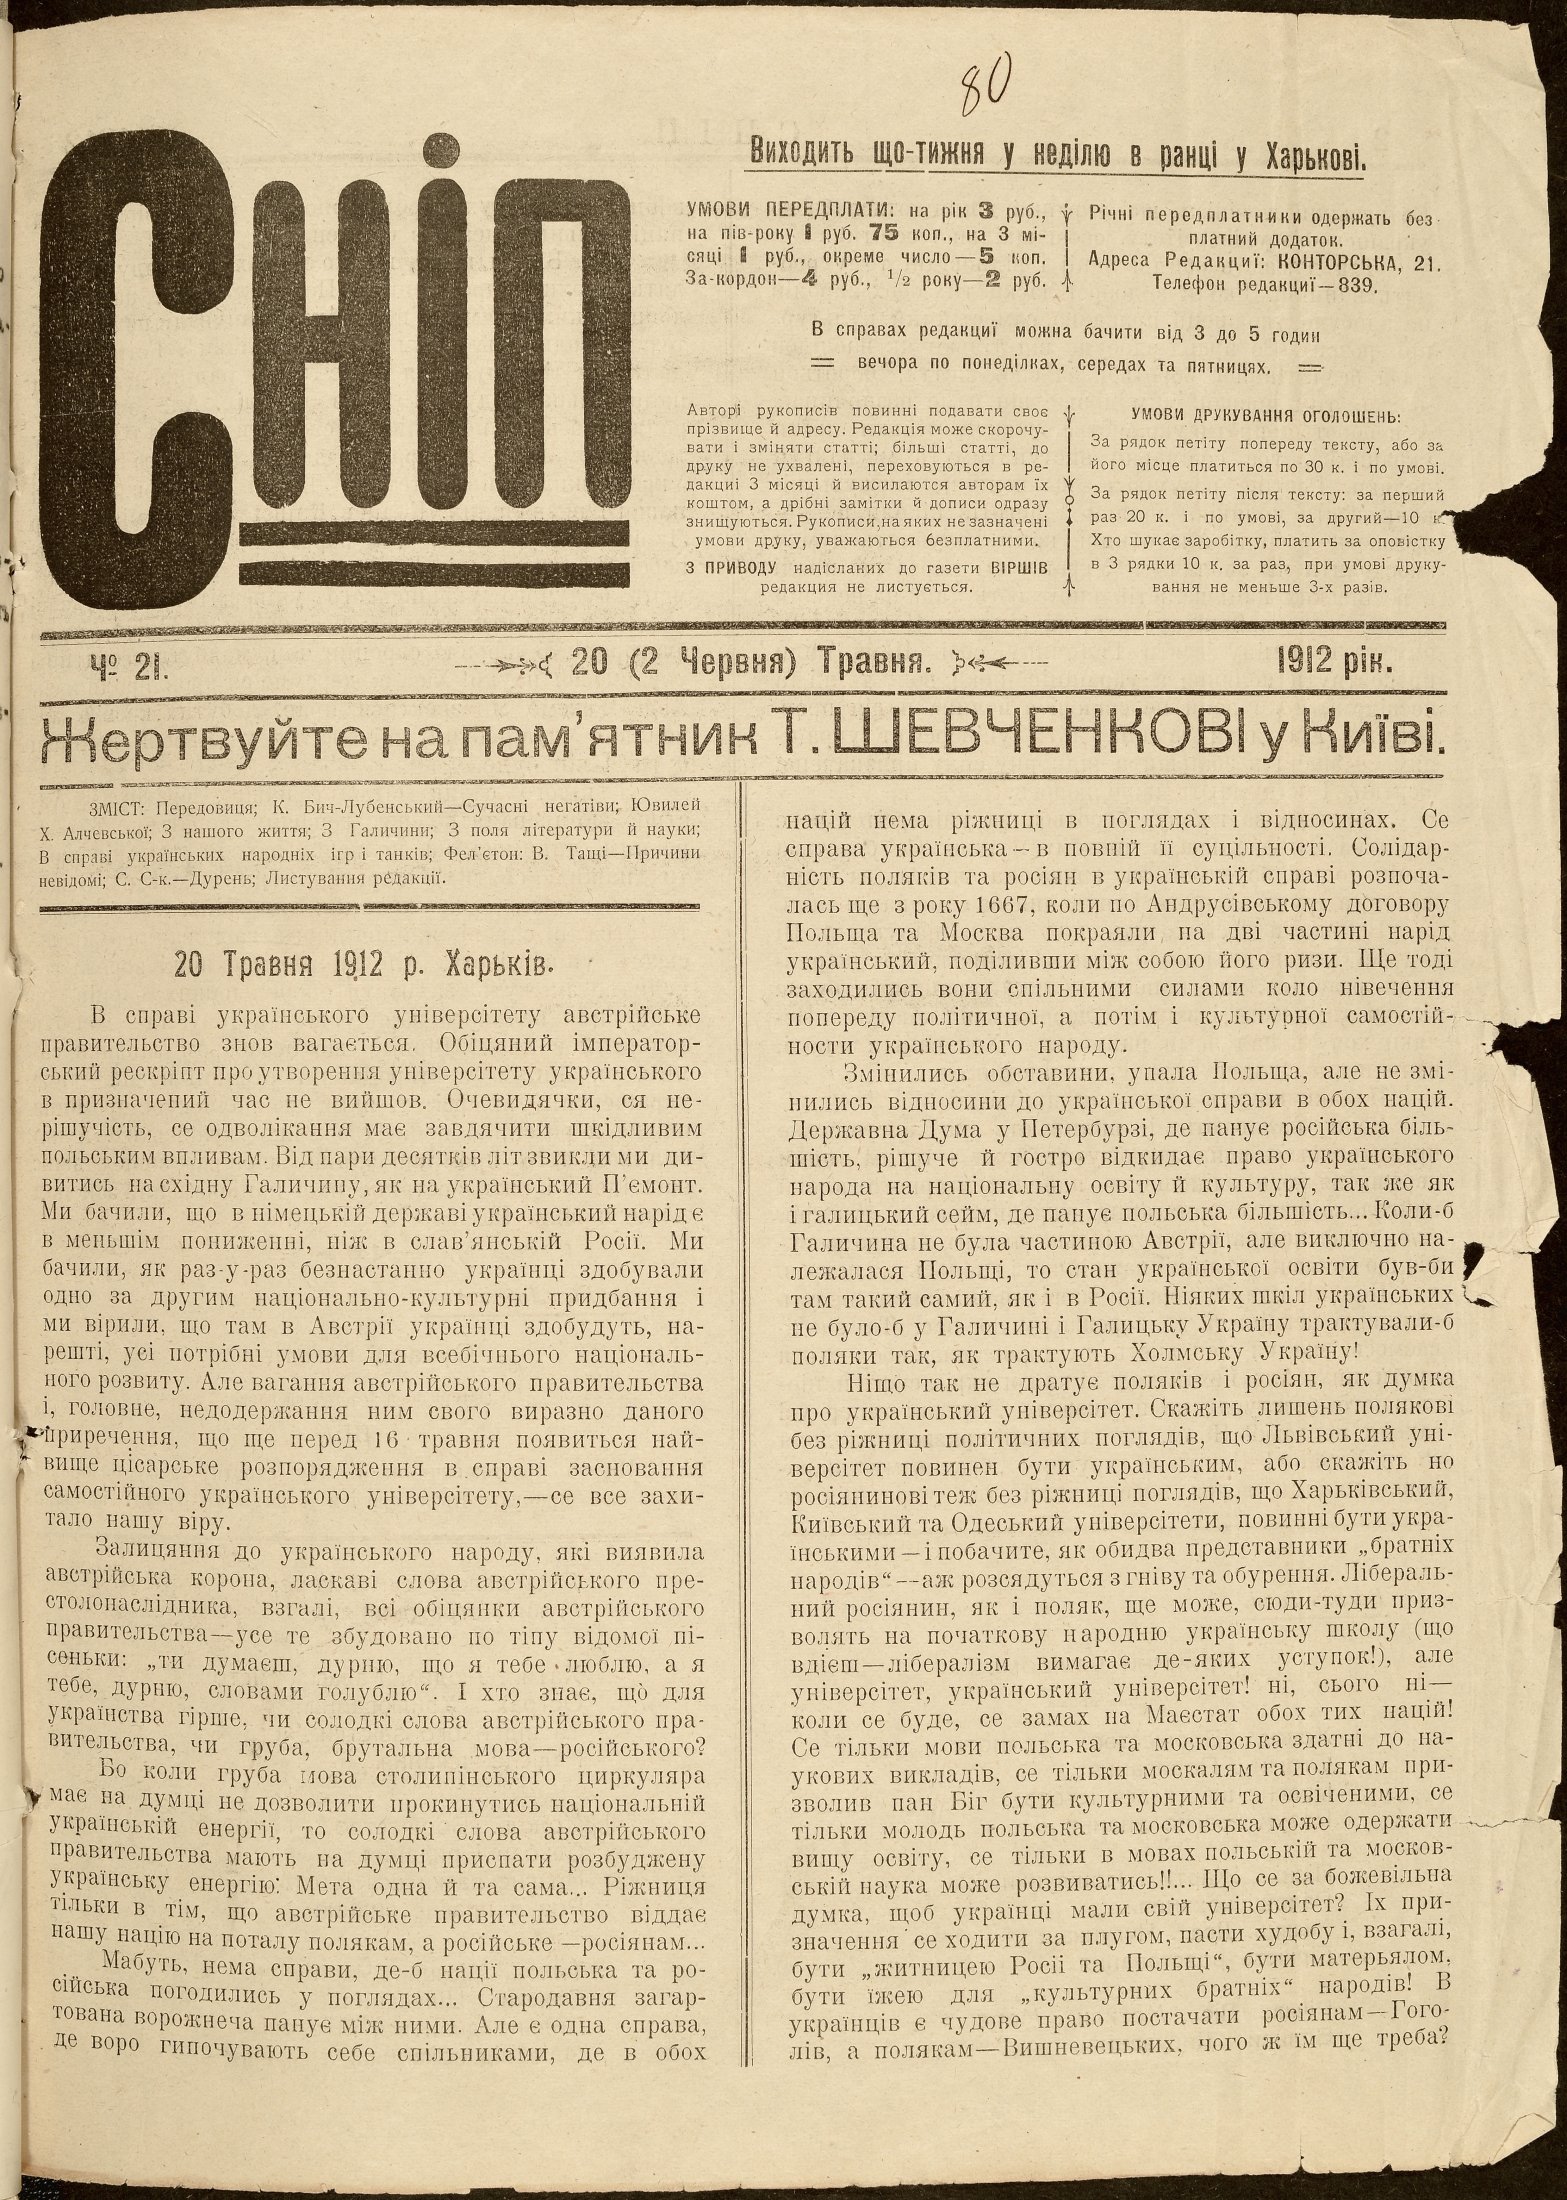 Примірник газети “Сніп”, що видавалась М. Міхновським. 20 травня 1912 р.